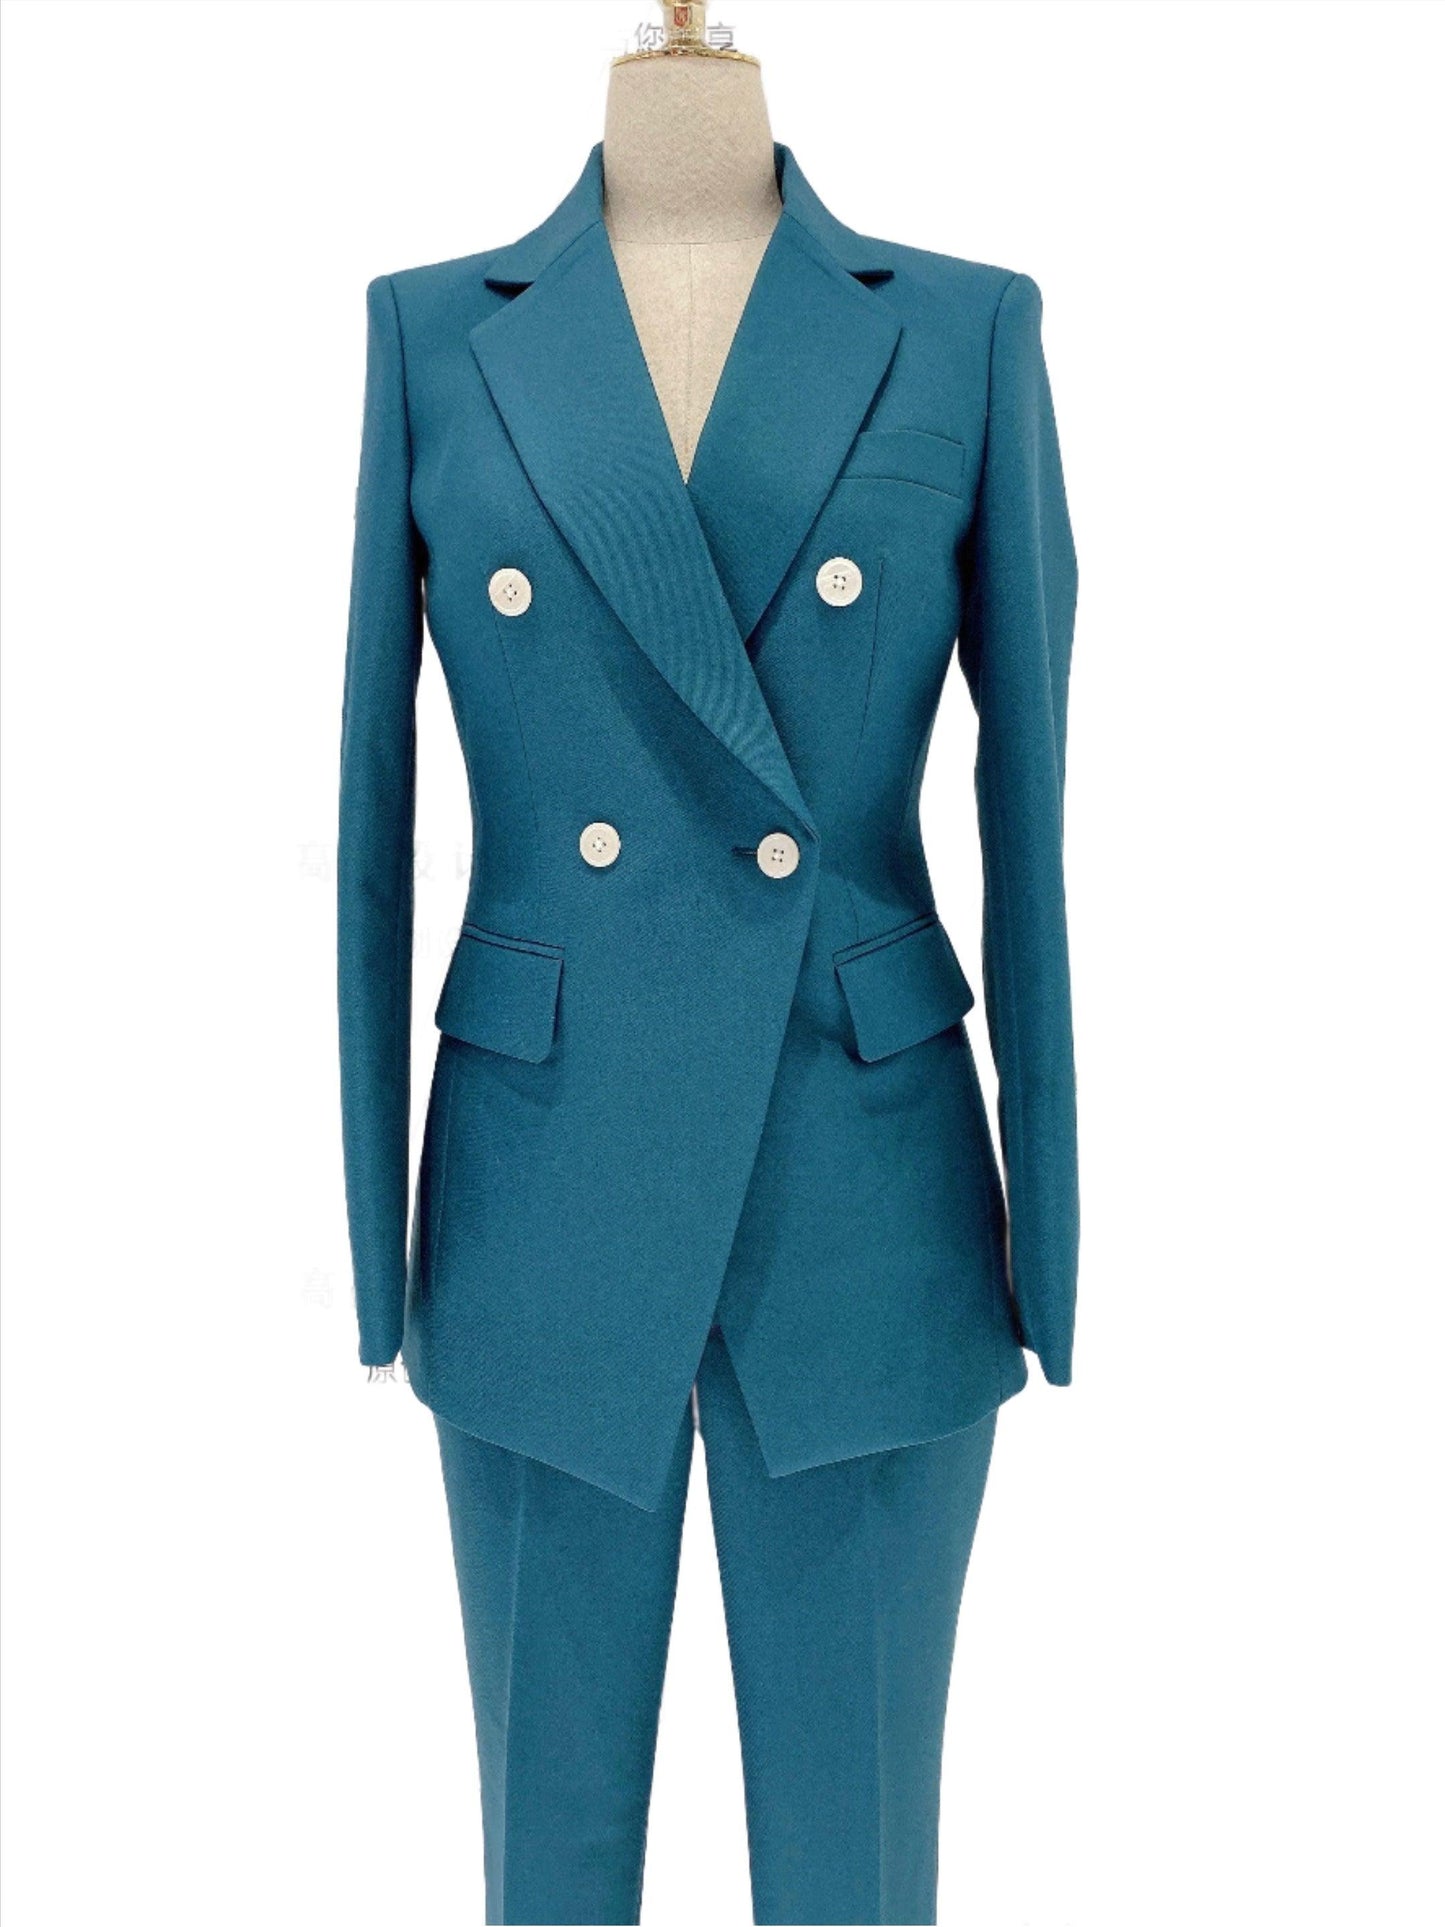 Peacock Blue Pant Suit - Women Two-Piece Trouser Suit - Pantsuit - Guocali